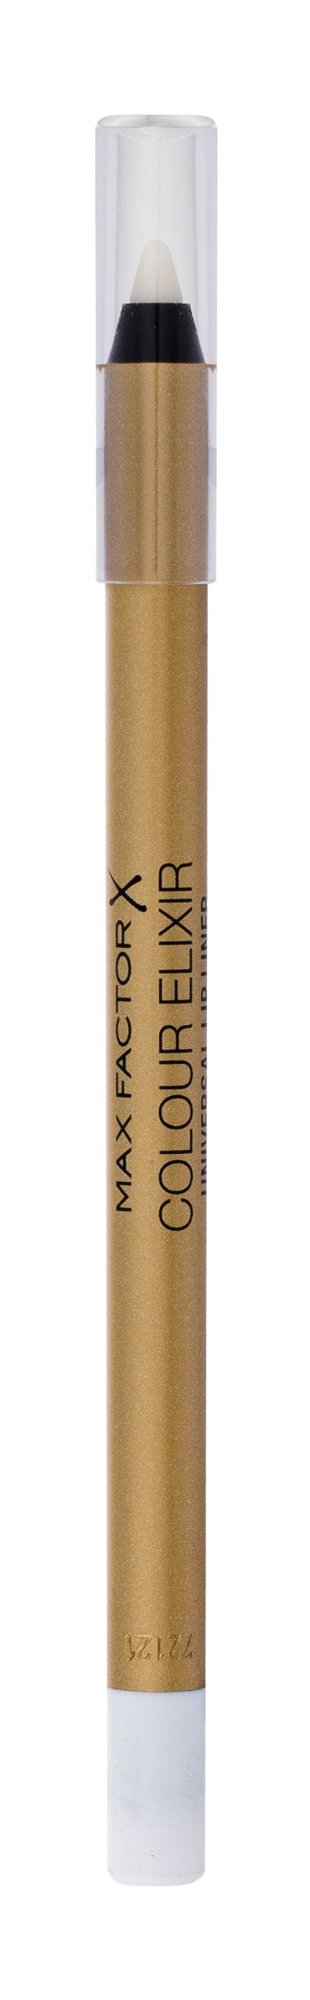 Max Factor Colour Elixir